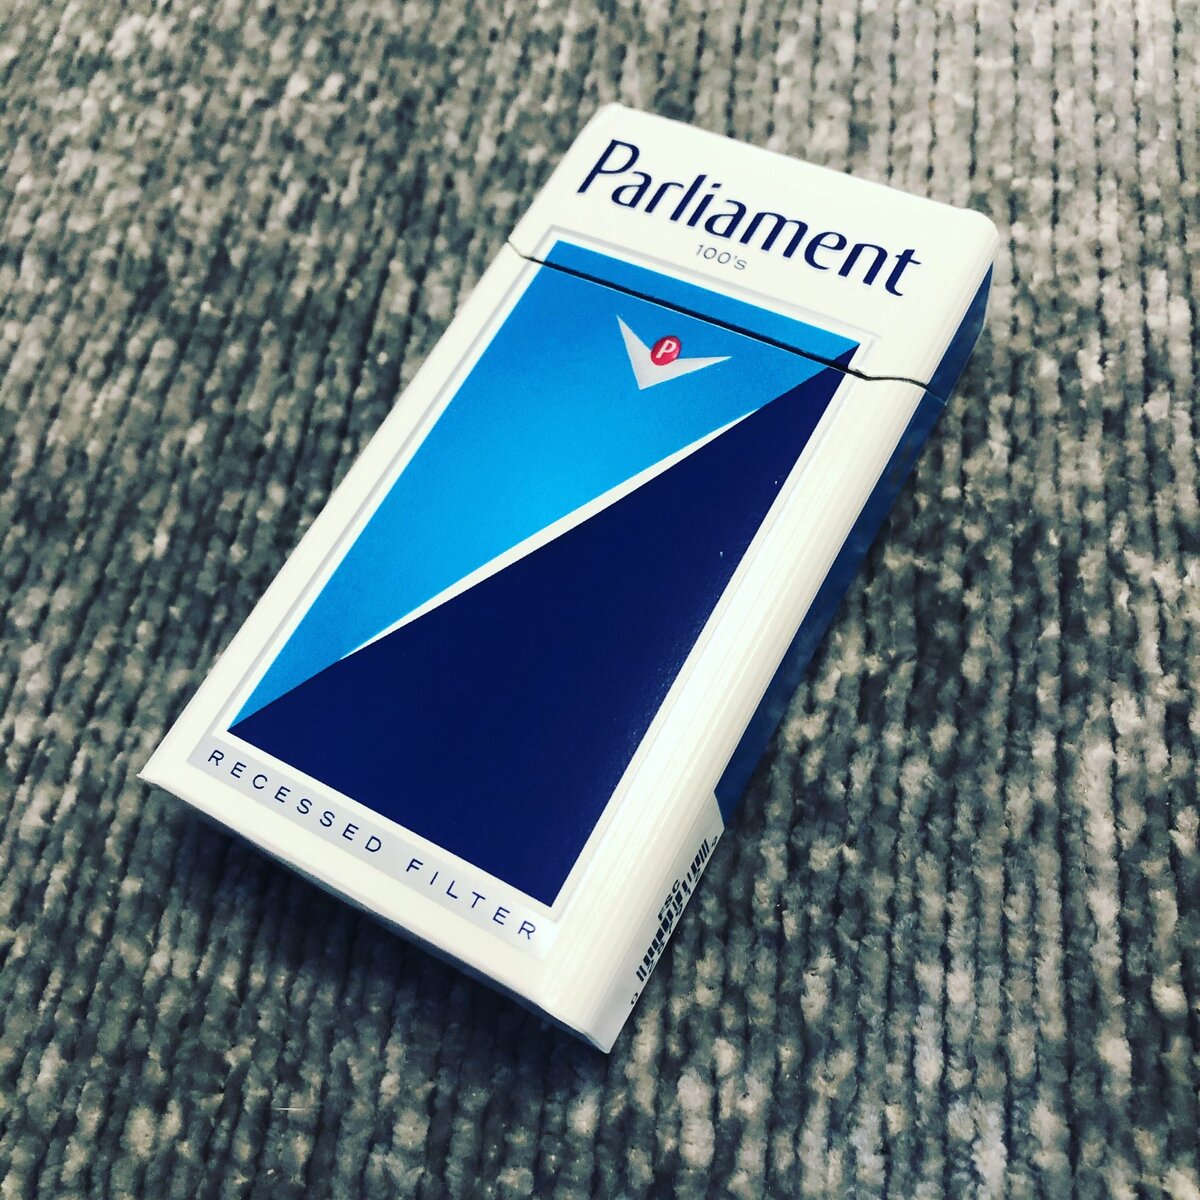 Сигареты Parliament Night Blue